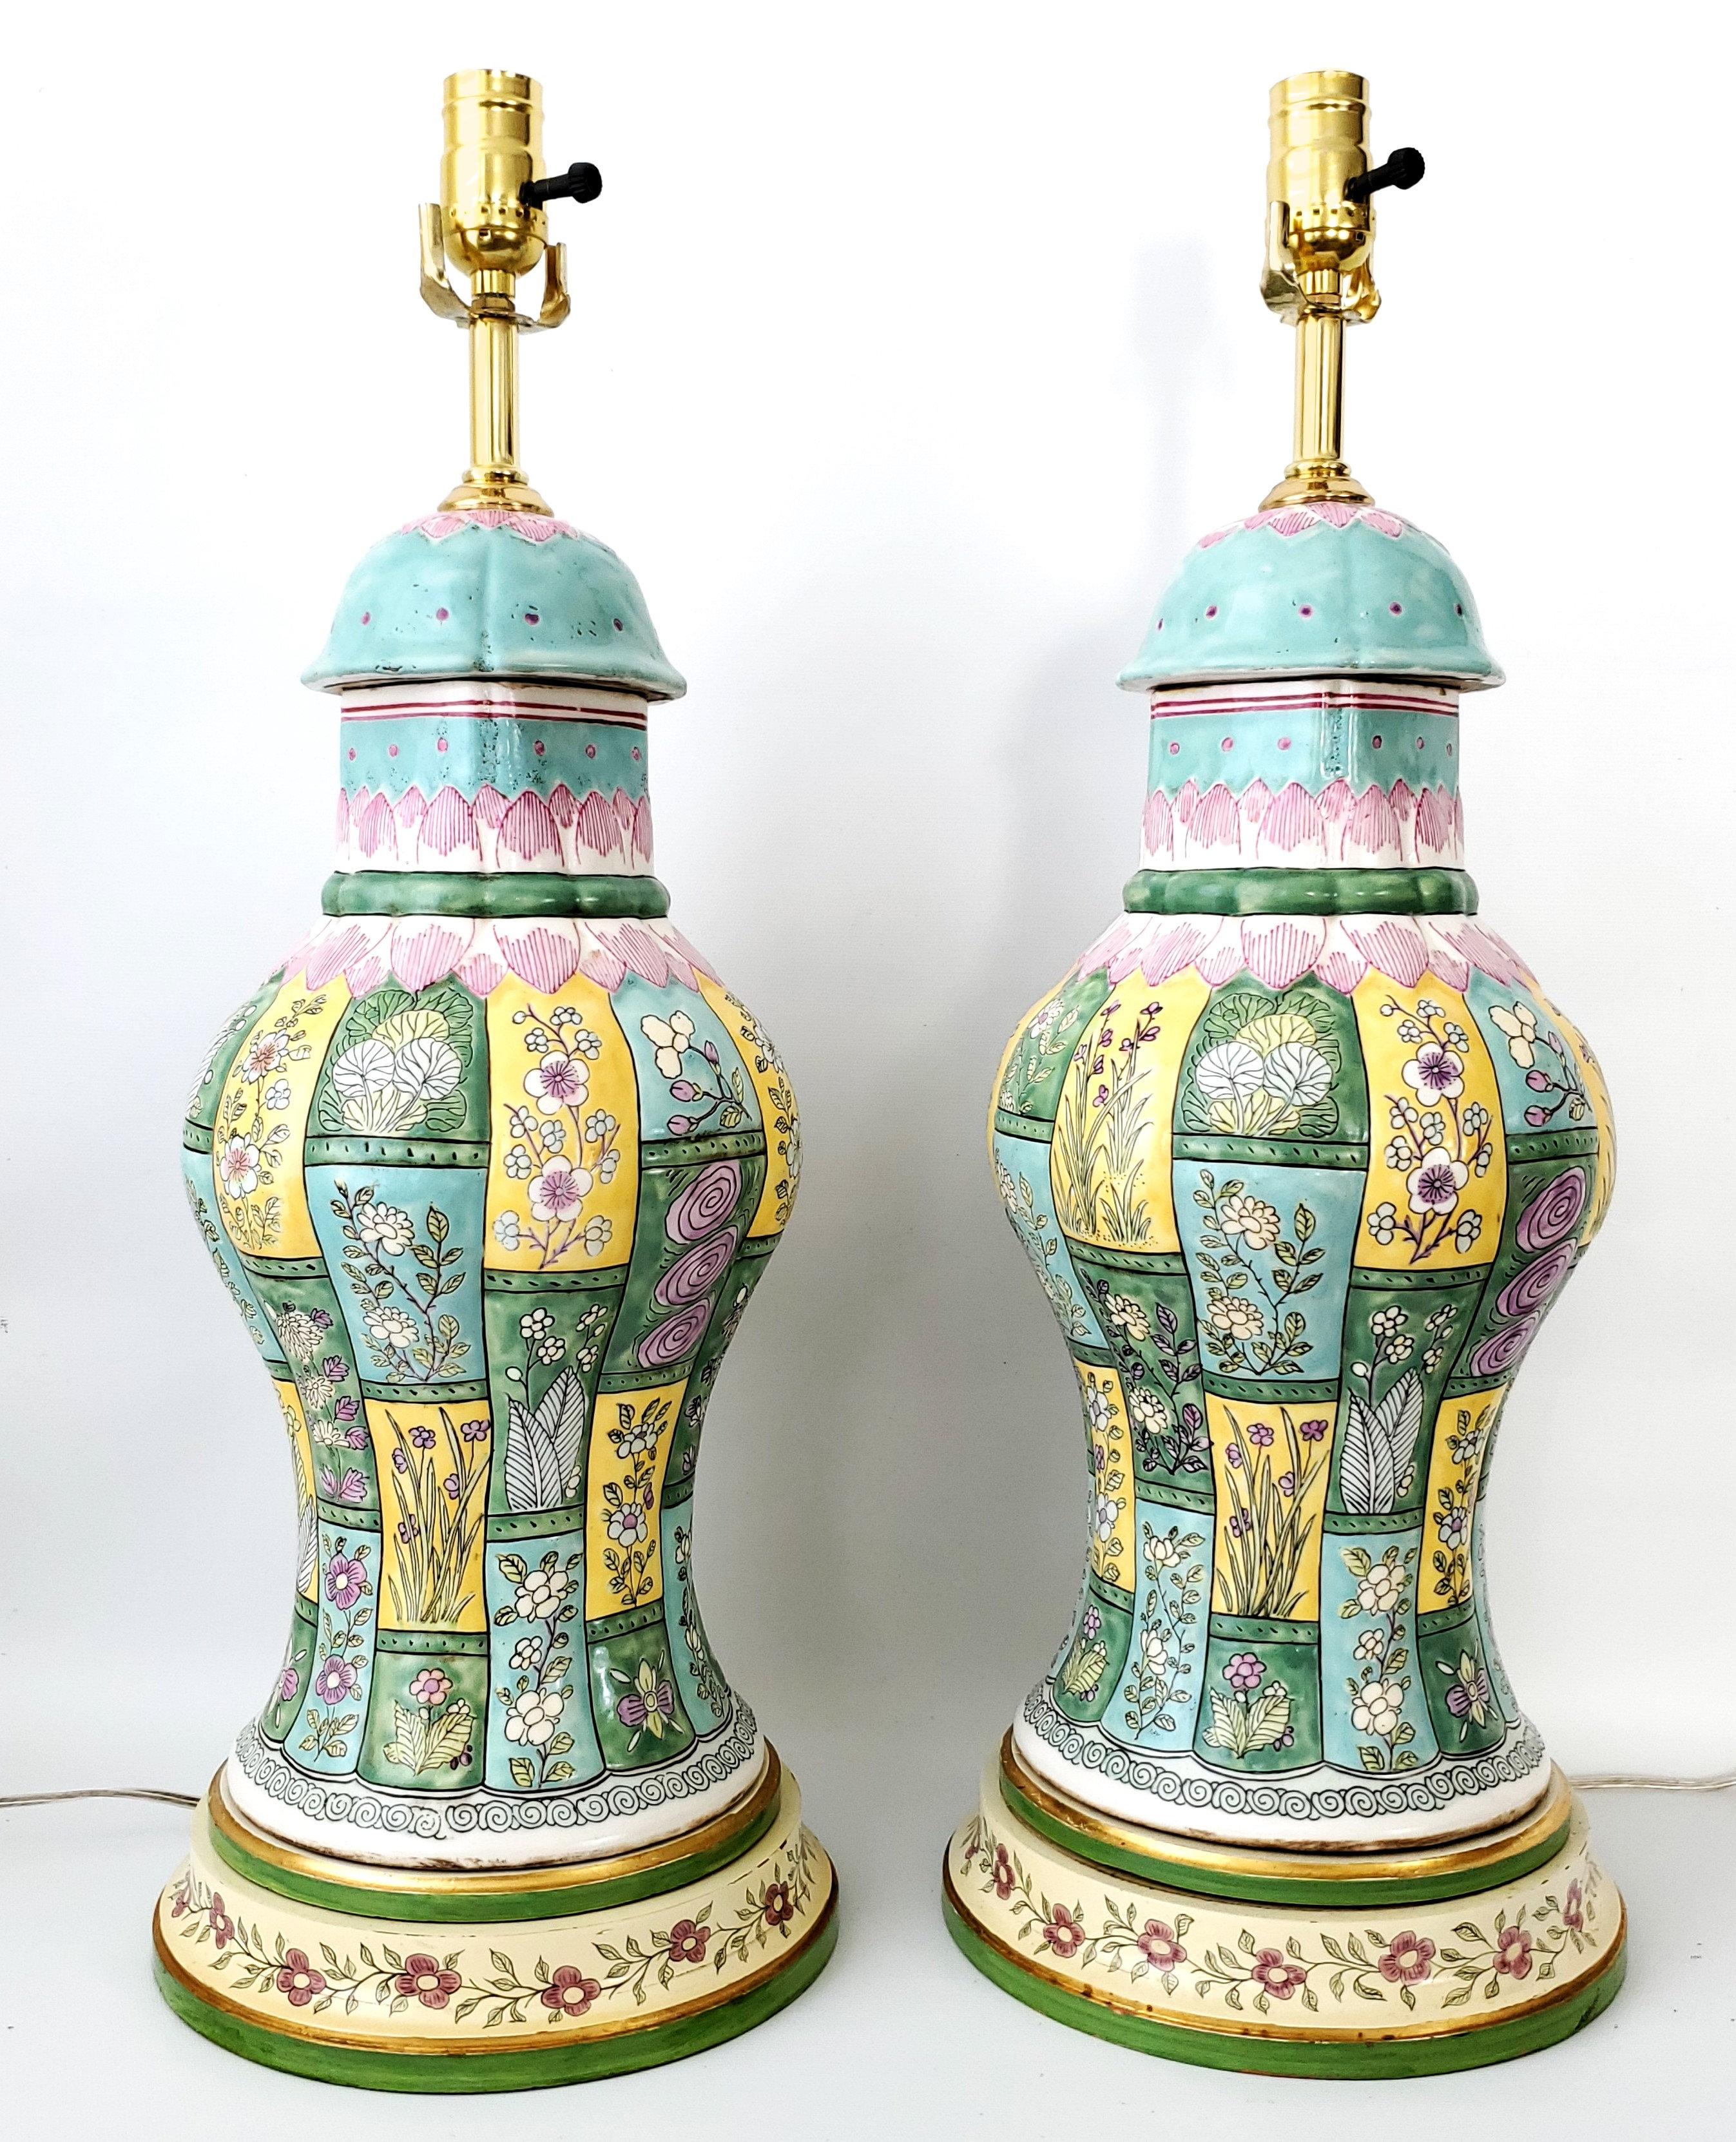 Ein Paar chinesische Porzellan-Tischlampen in Balusterform mit einer schweren Glasur. Die Lampenkörper sind aus dickem, farbenfrohem Porzellan mit türkisfarbenen, rosafarbenen, gelben, lavendelfarbenen und grünen floralen und geometrischen Mustern.